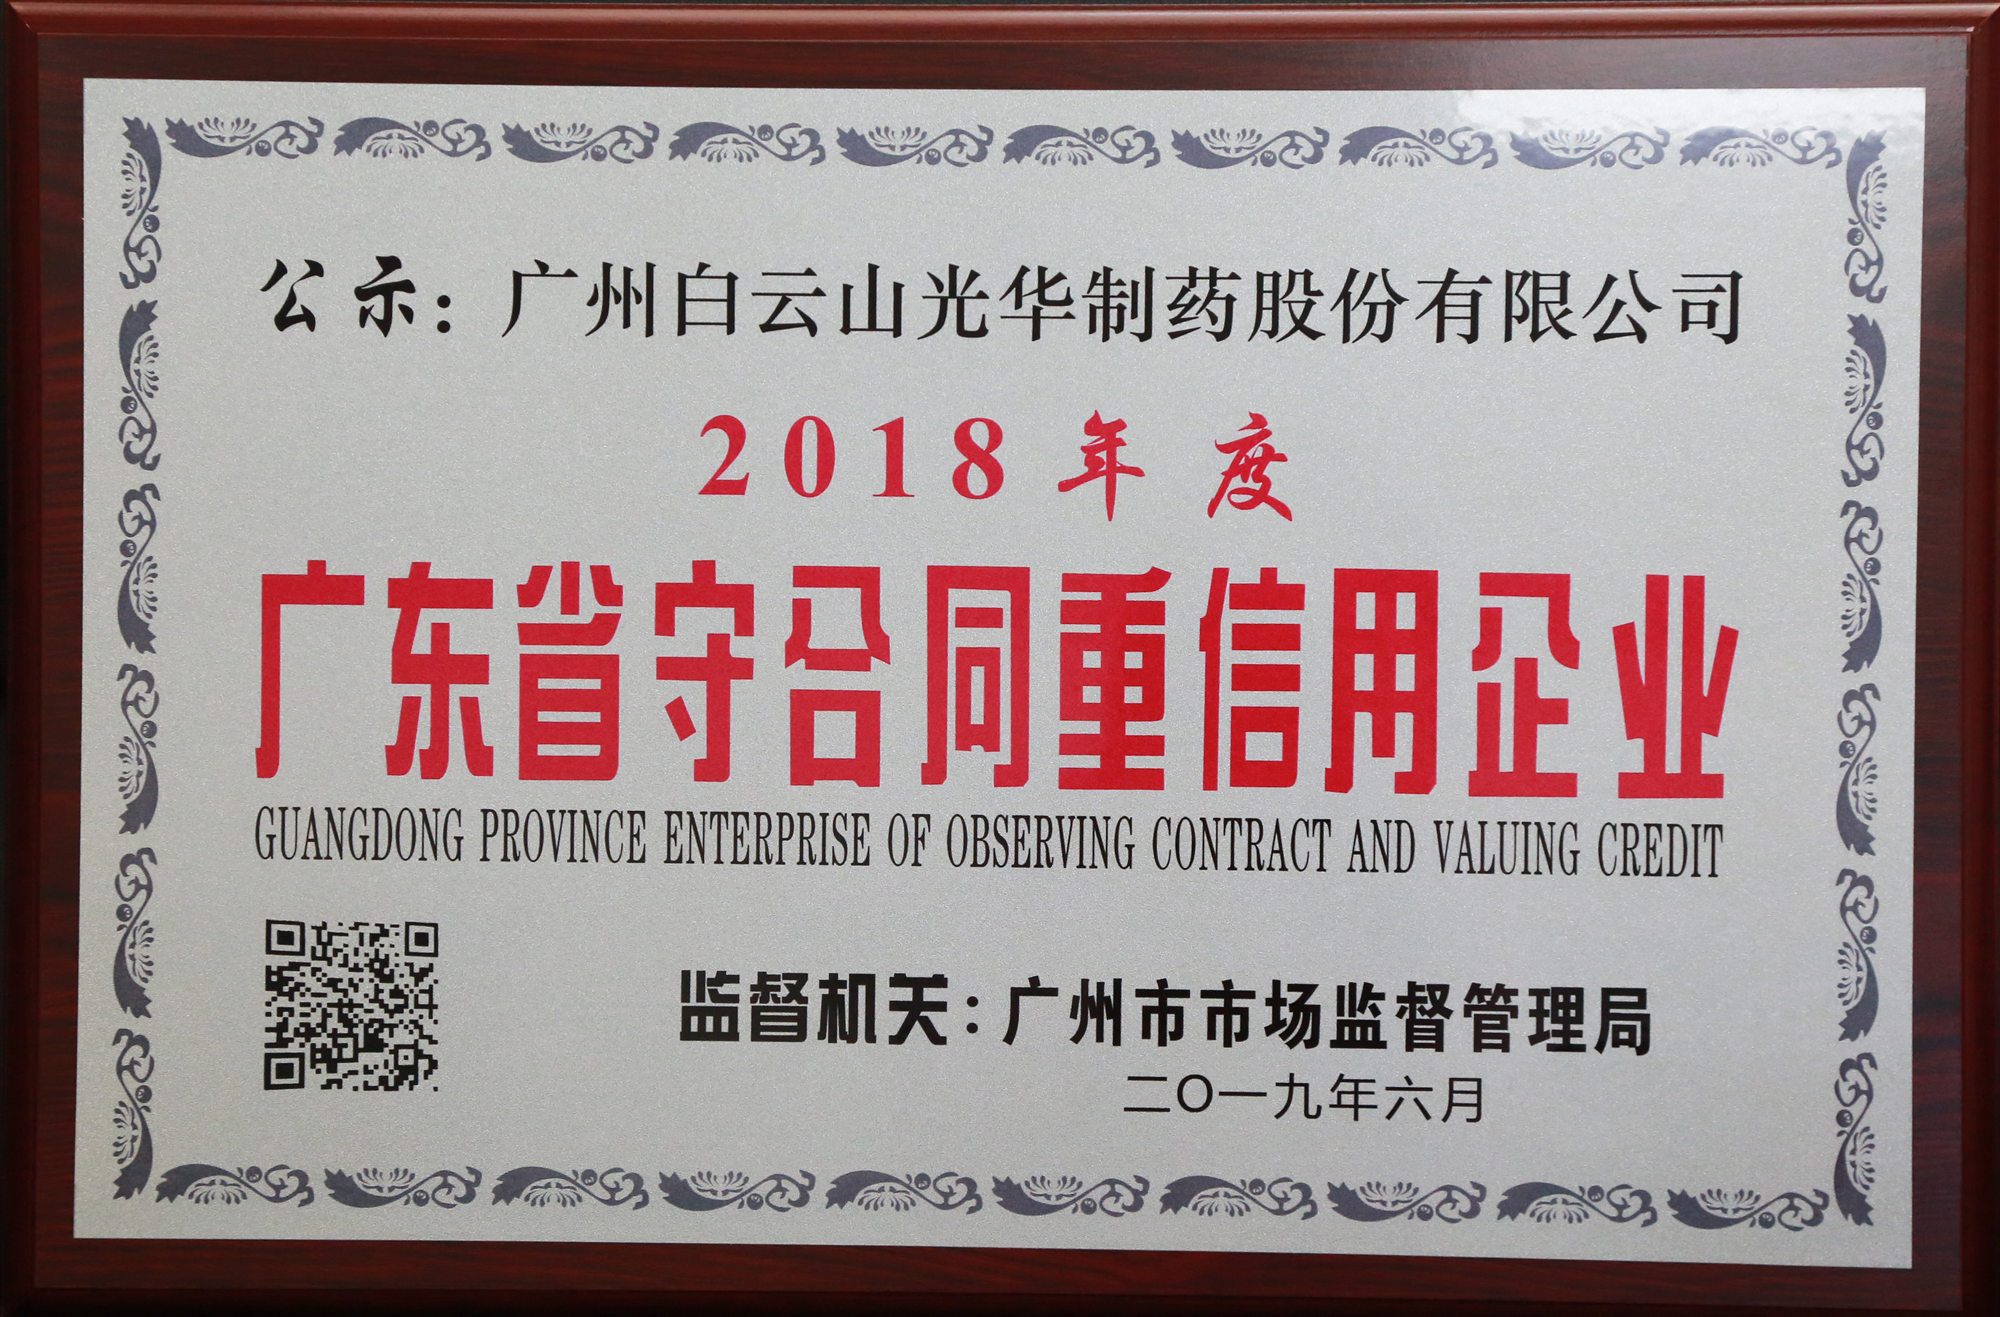 2018年度廣東省守合同重信用企業